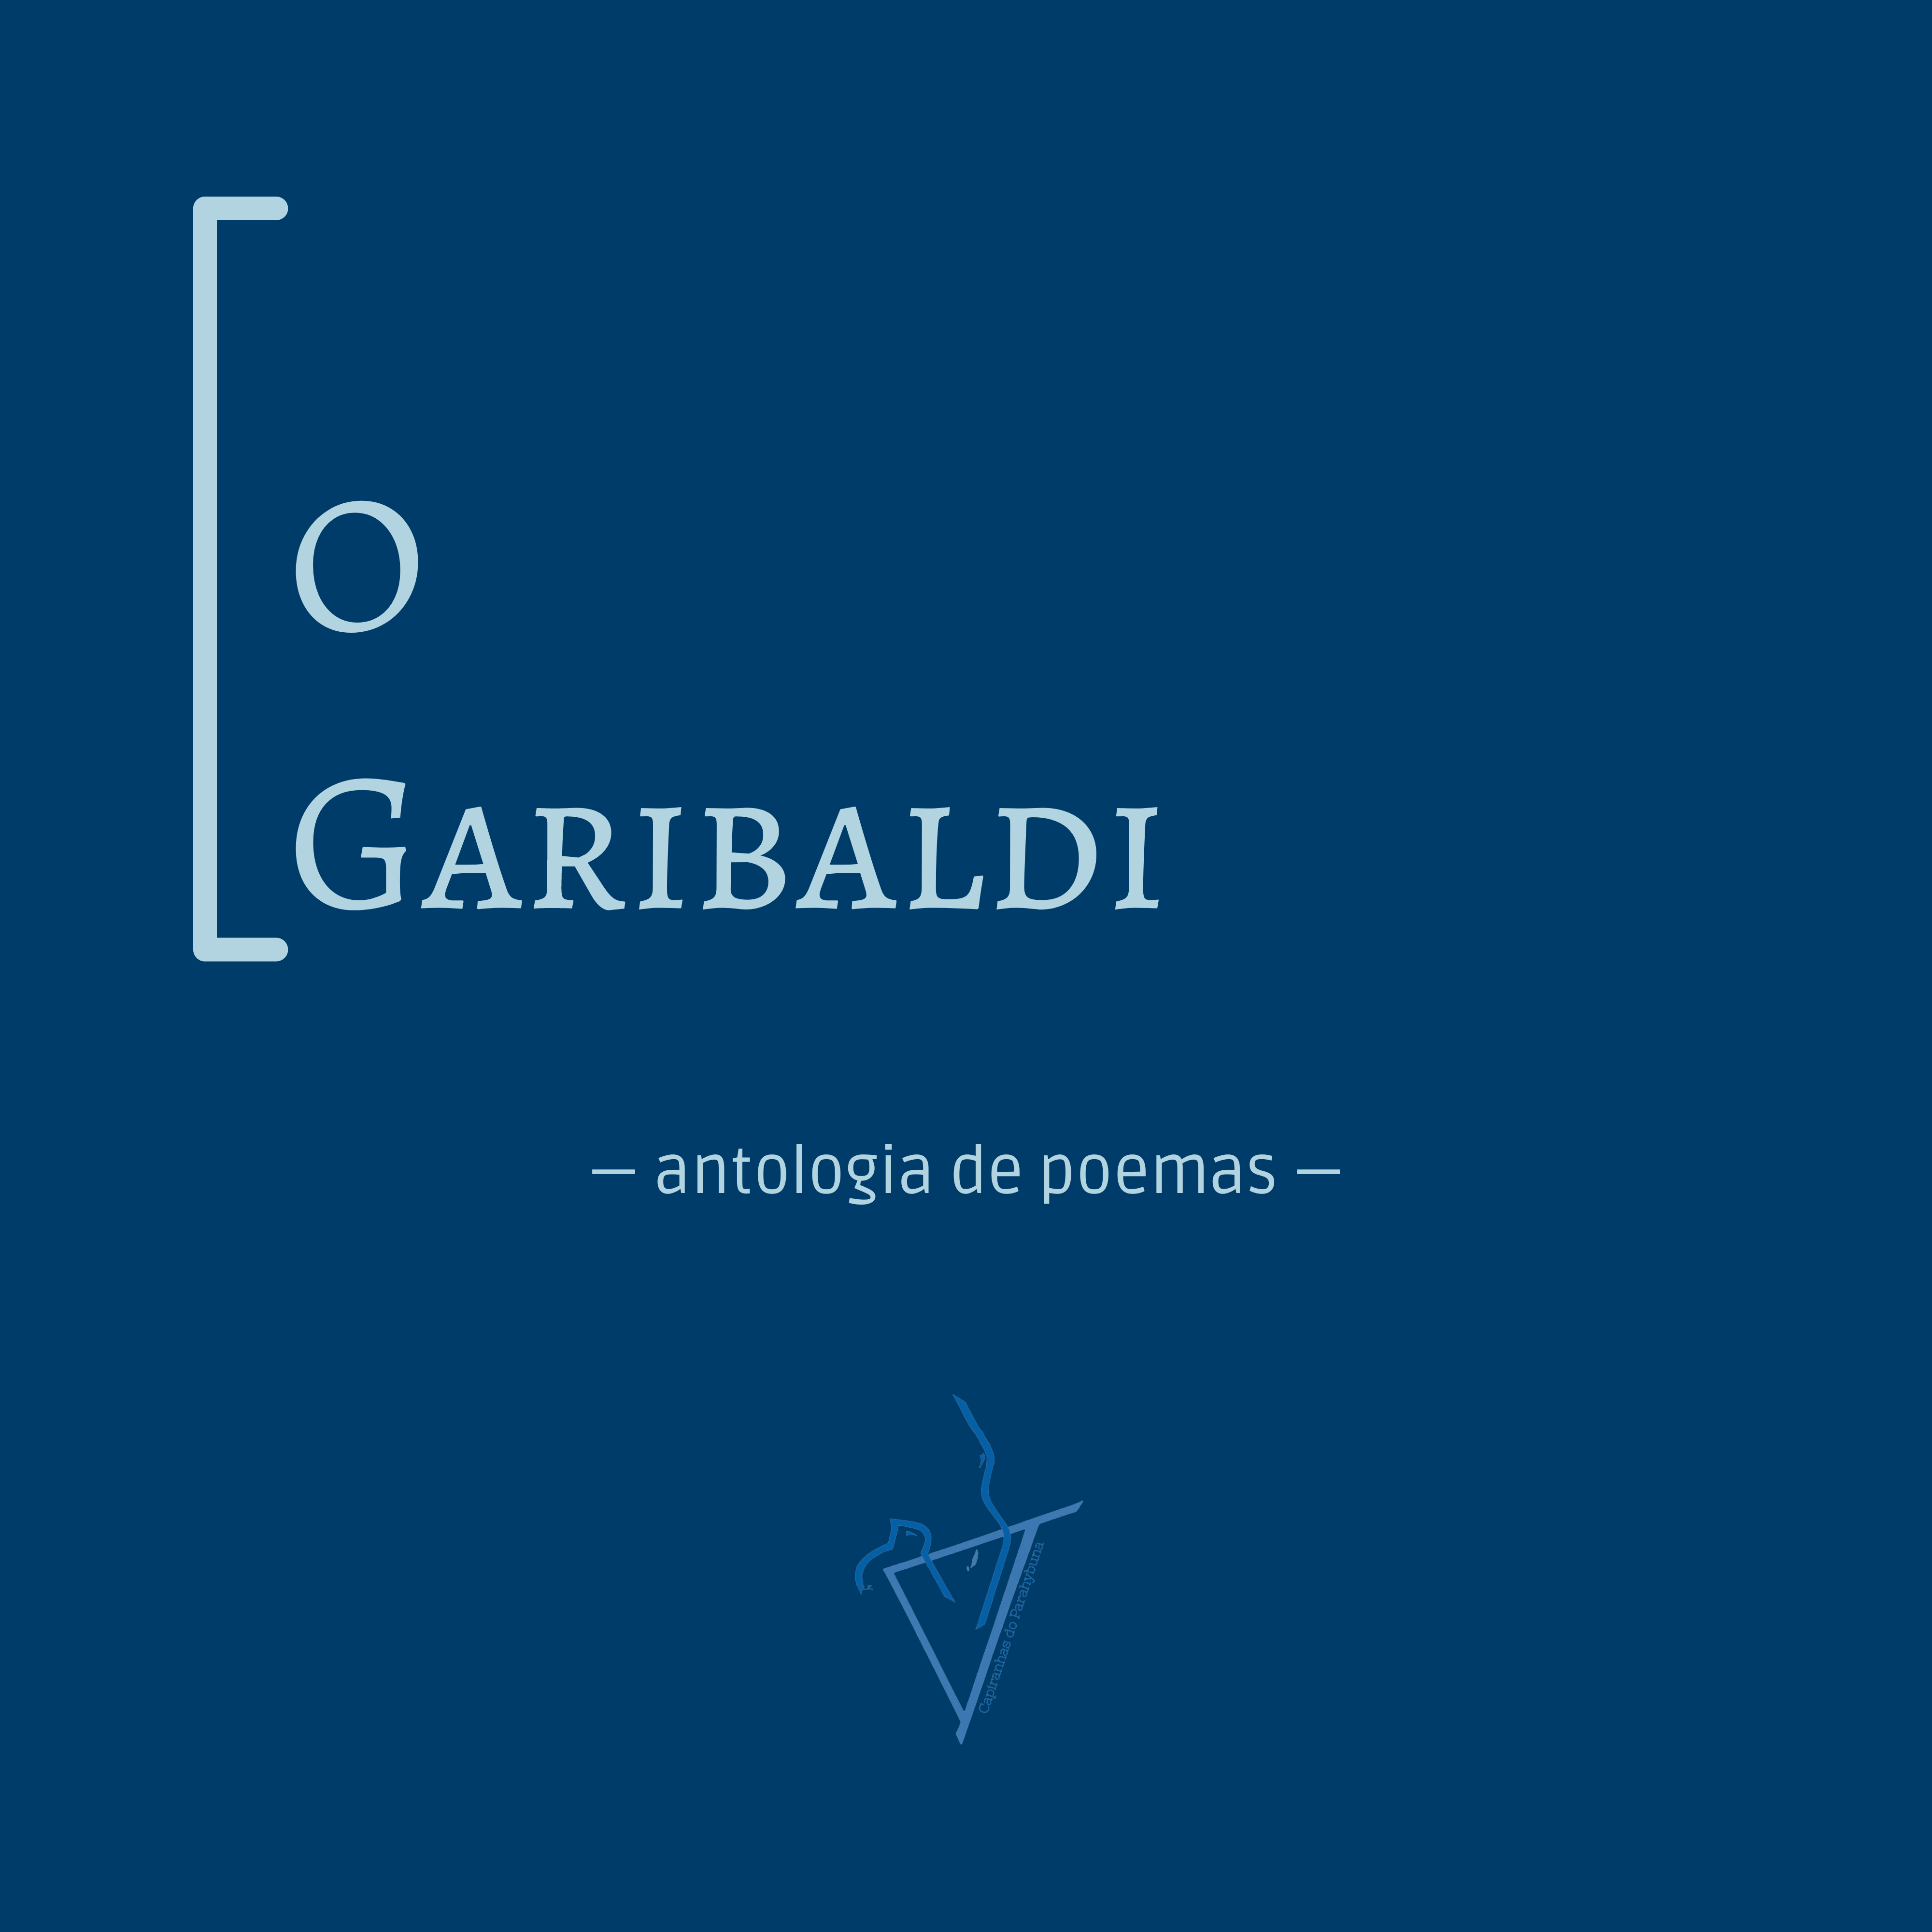 antologia de poesia brasileira contemporânea